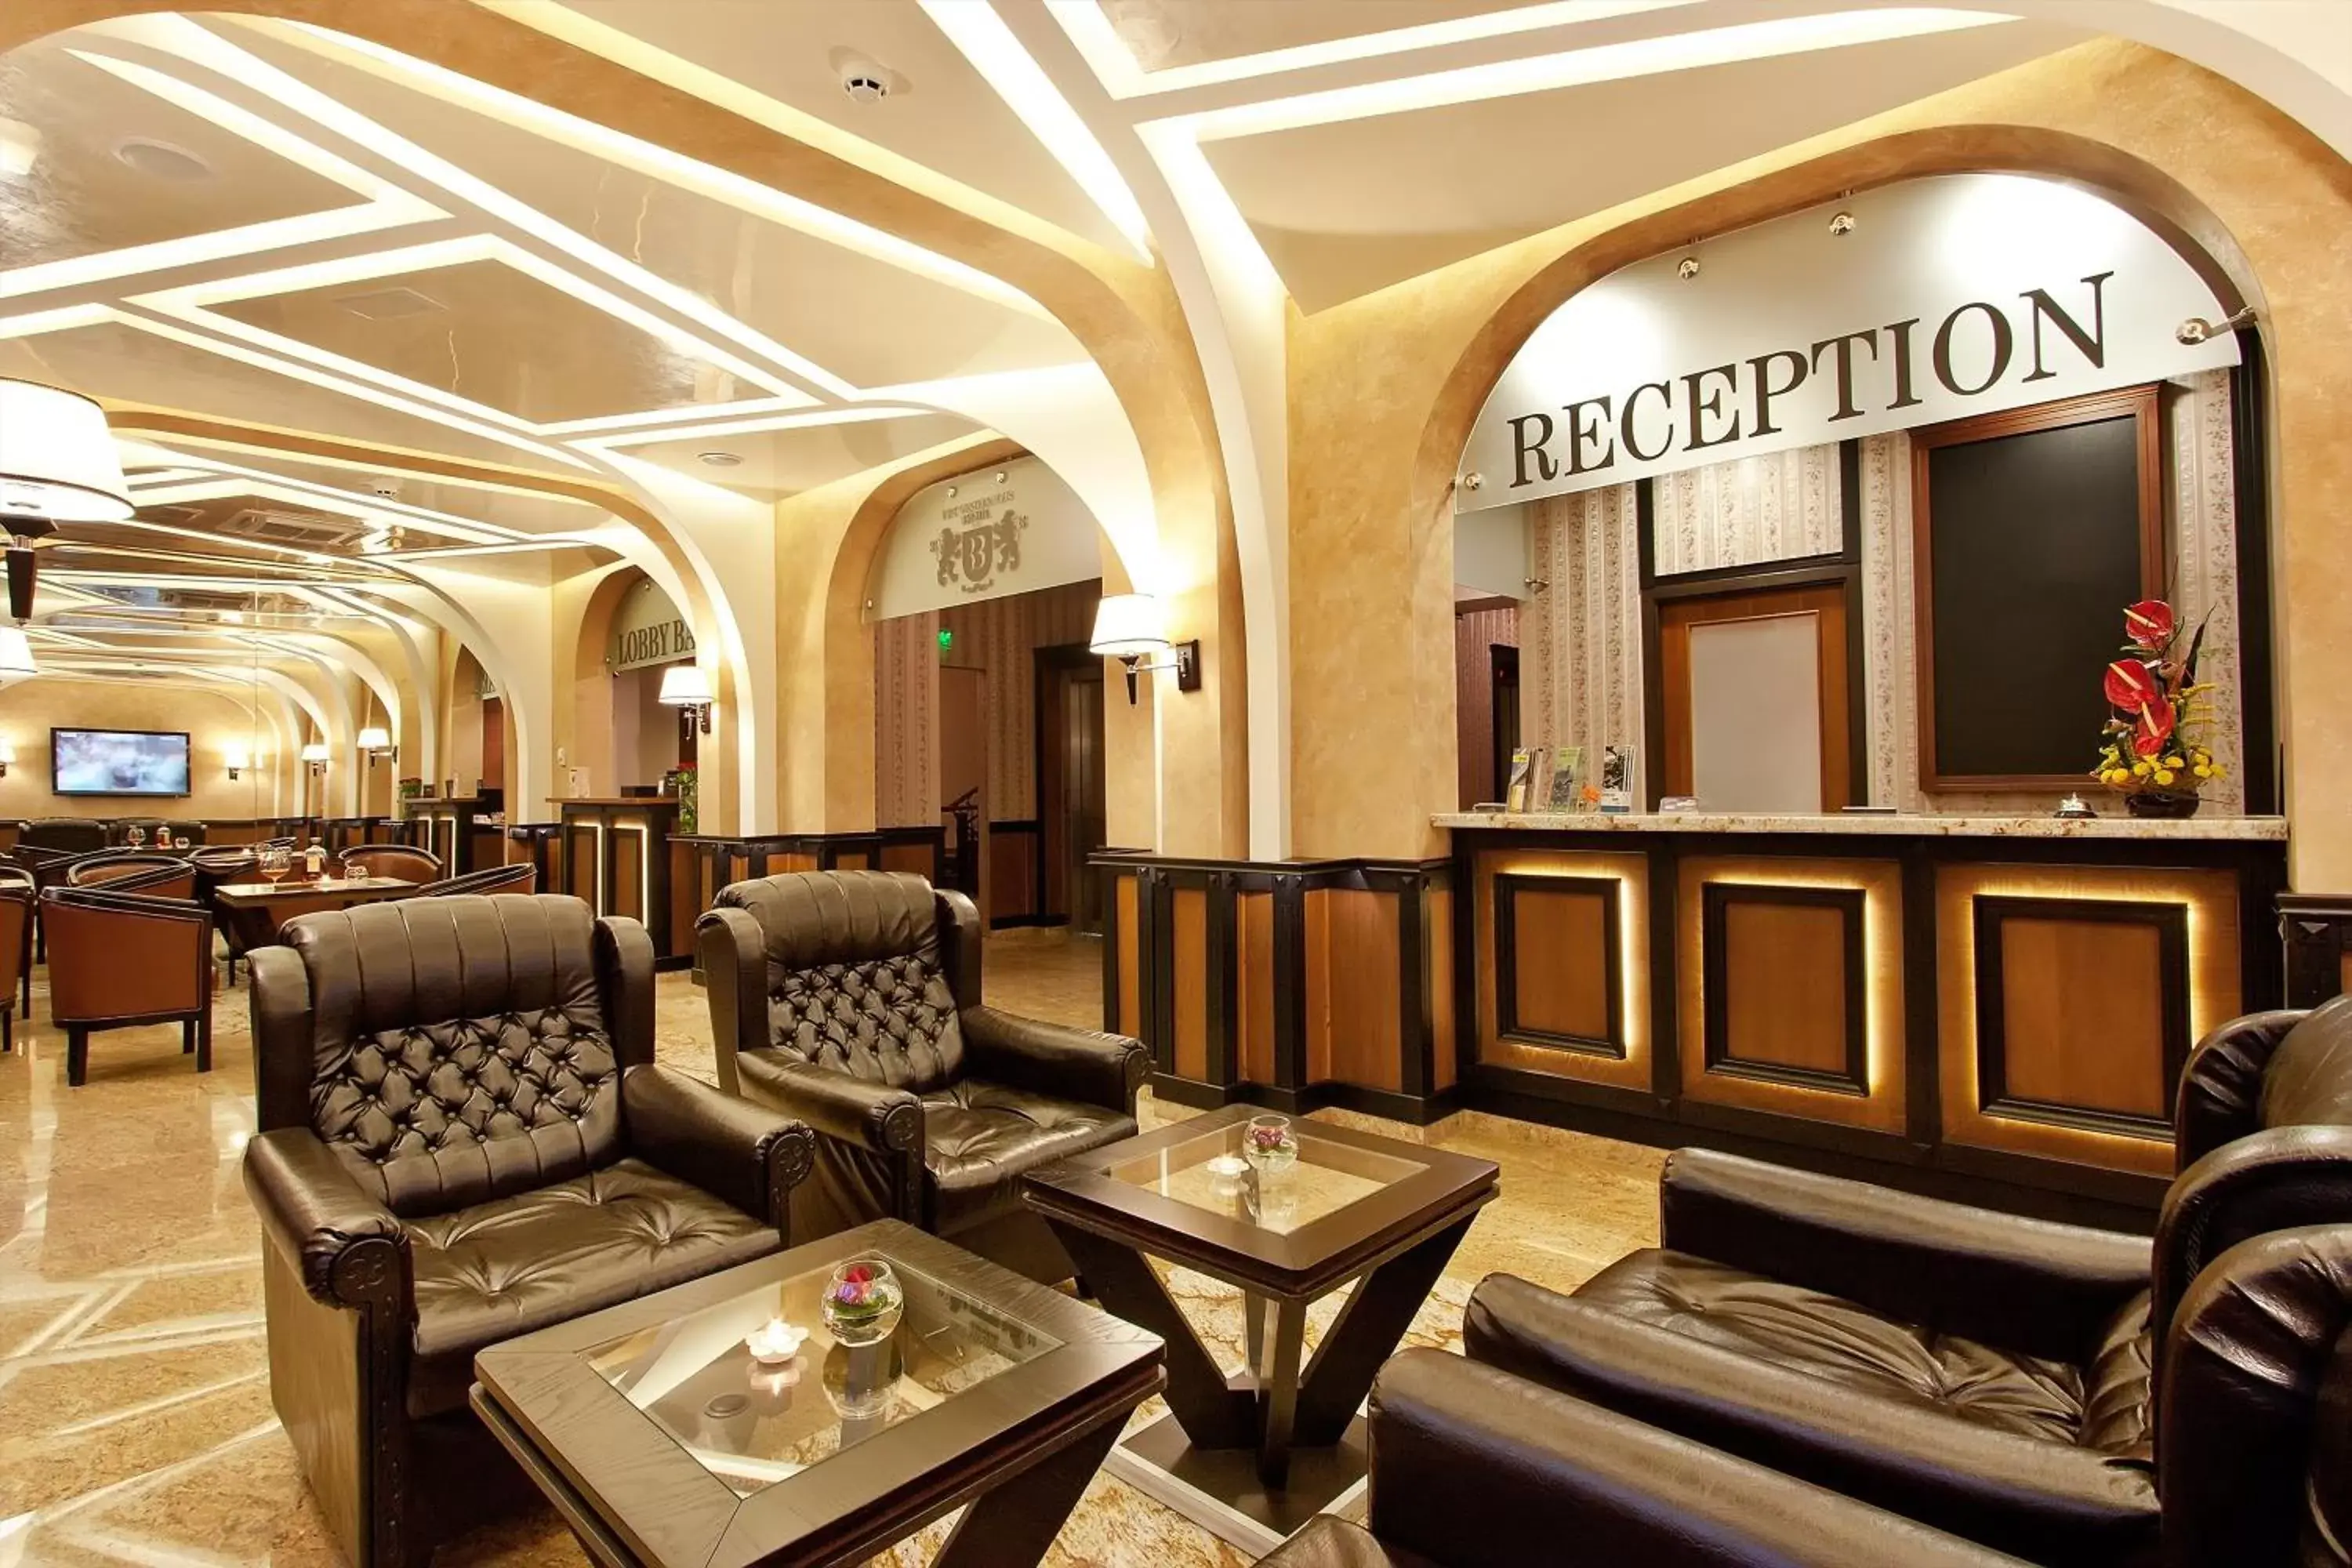 Lobby or reception, Lobby/Reception in Best Western Plus Bristol Hotel